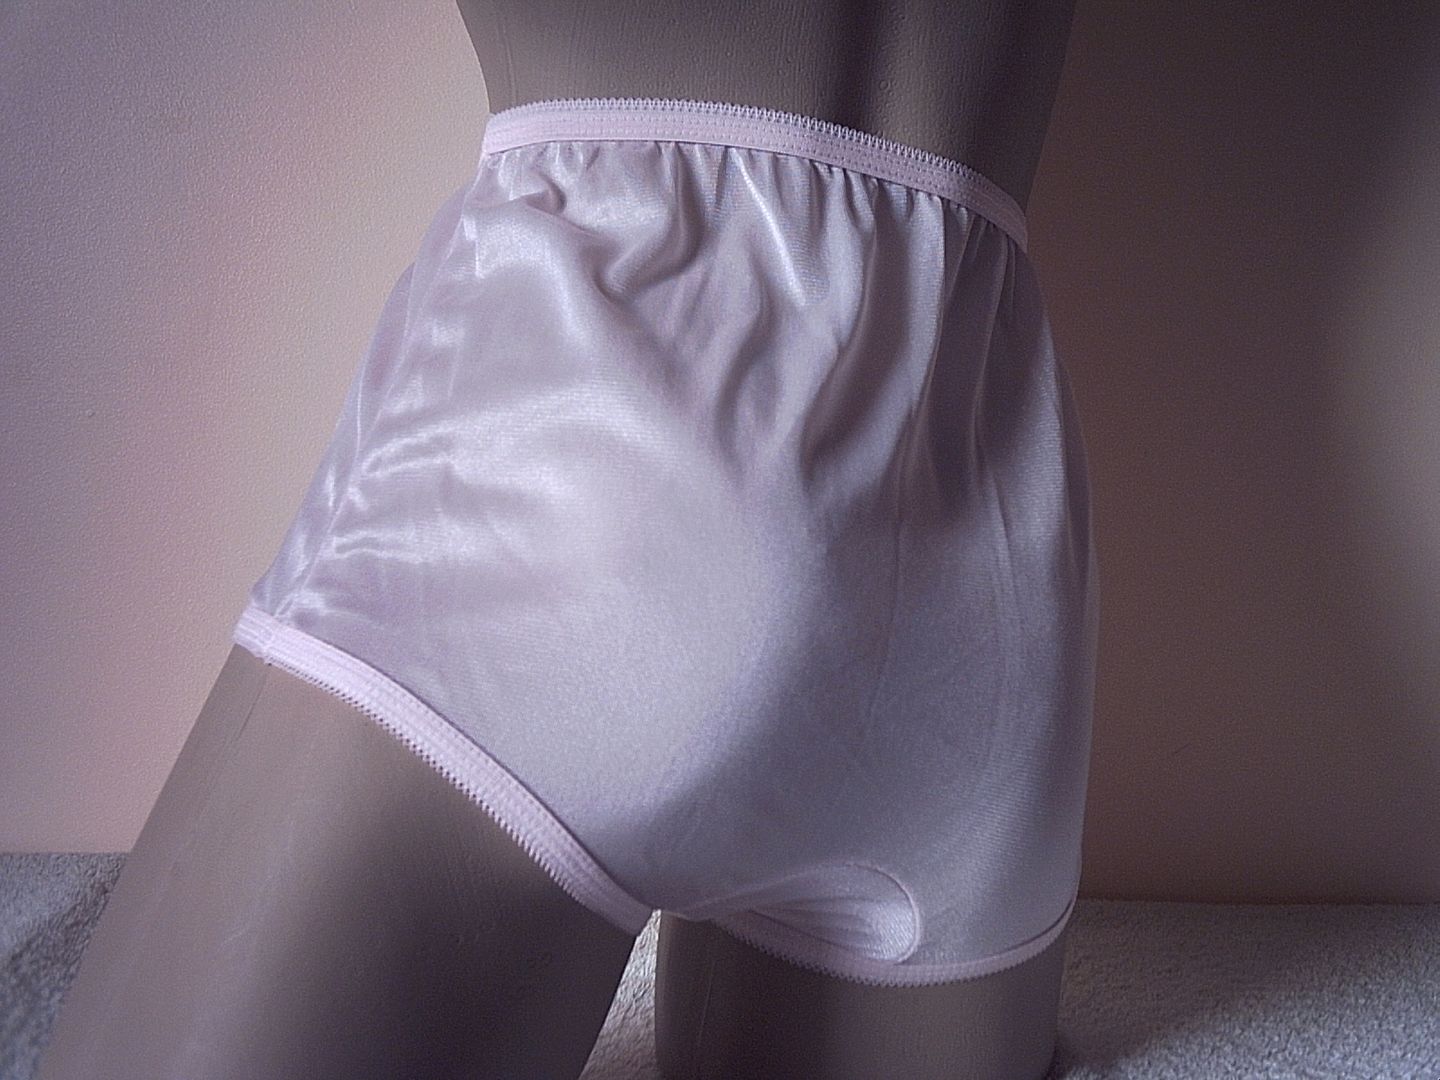 Silky Baby Pink Sheer Nylon Full Cut Panties Vintage Mushroom Gusset s 36"